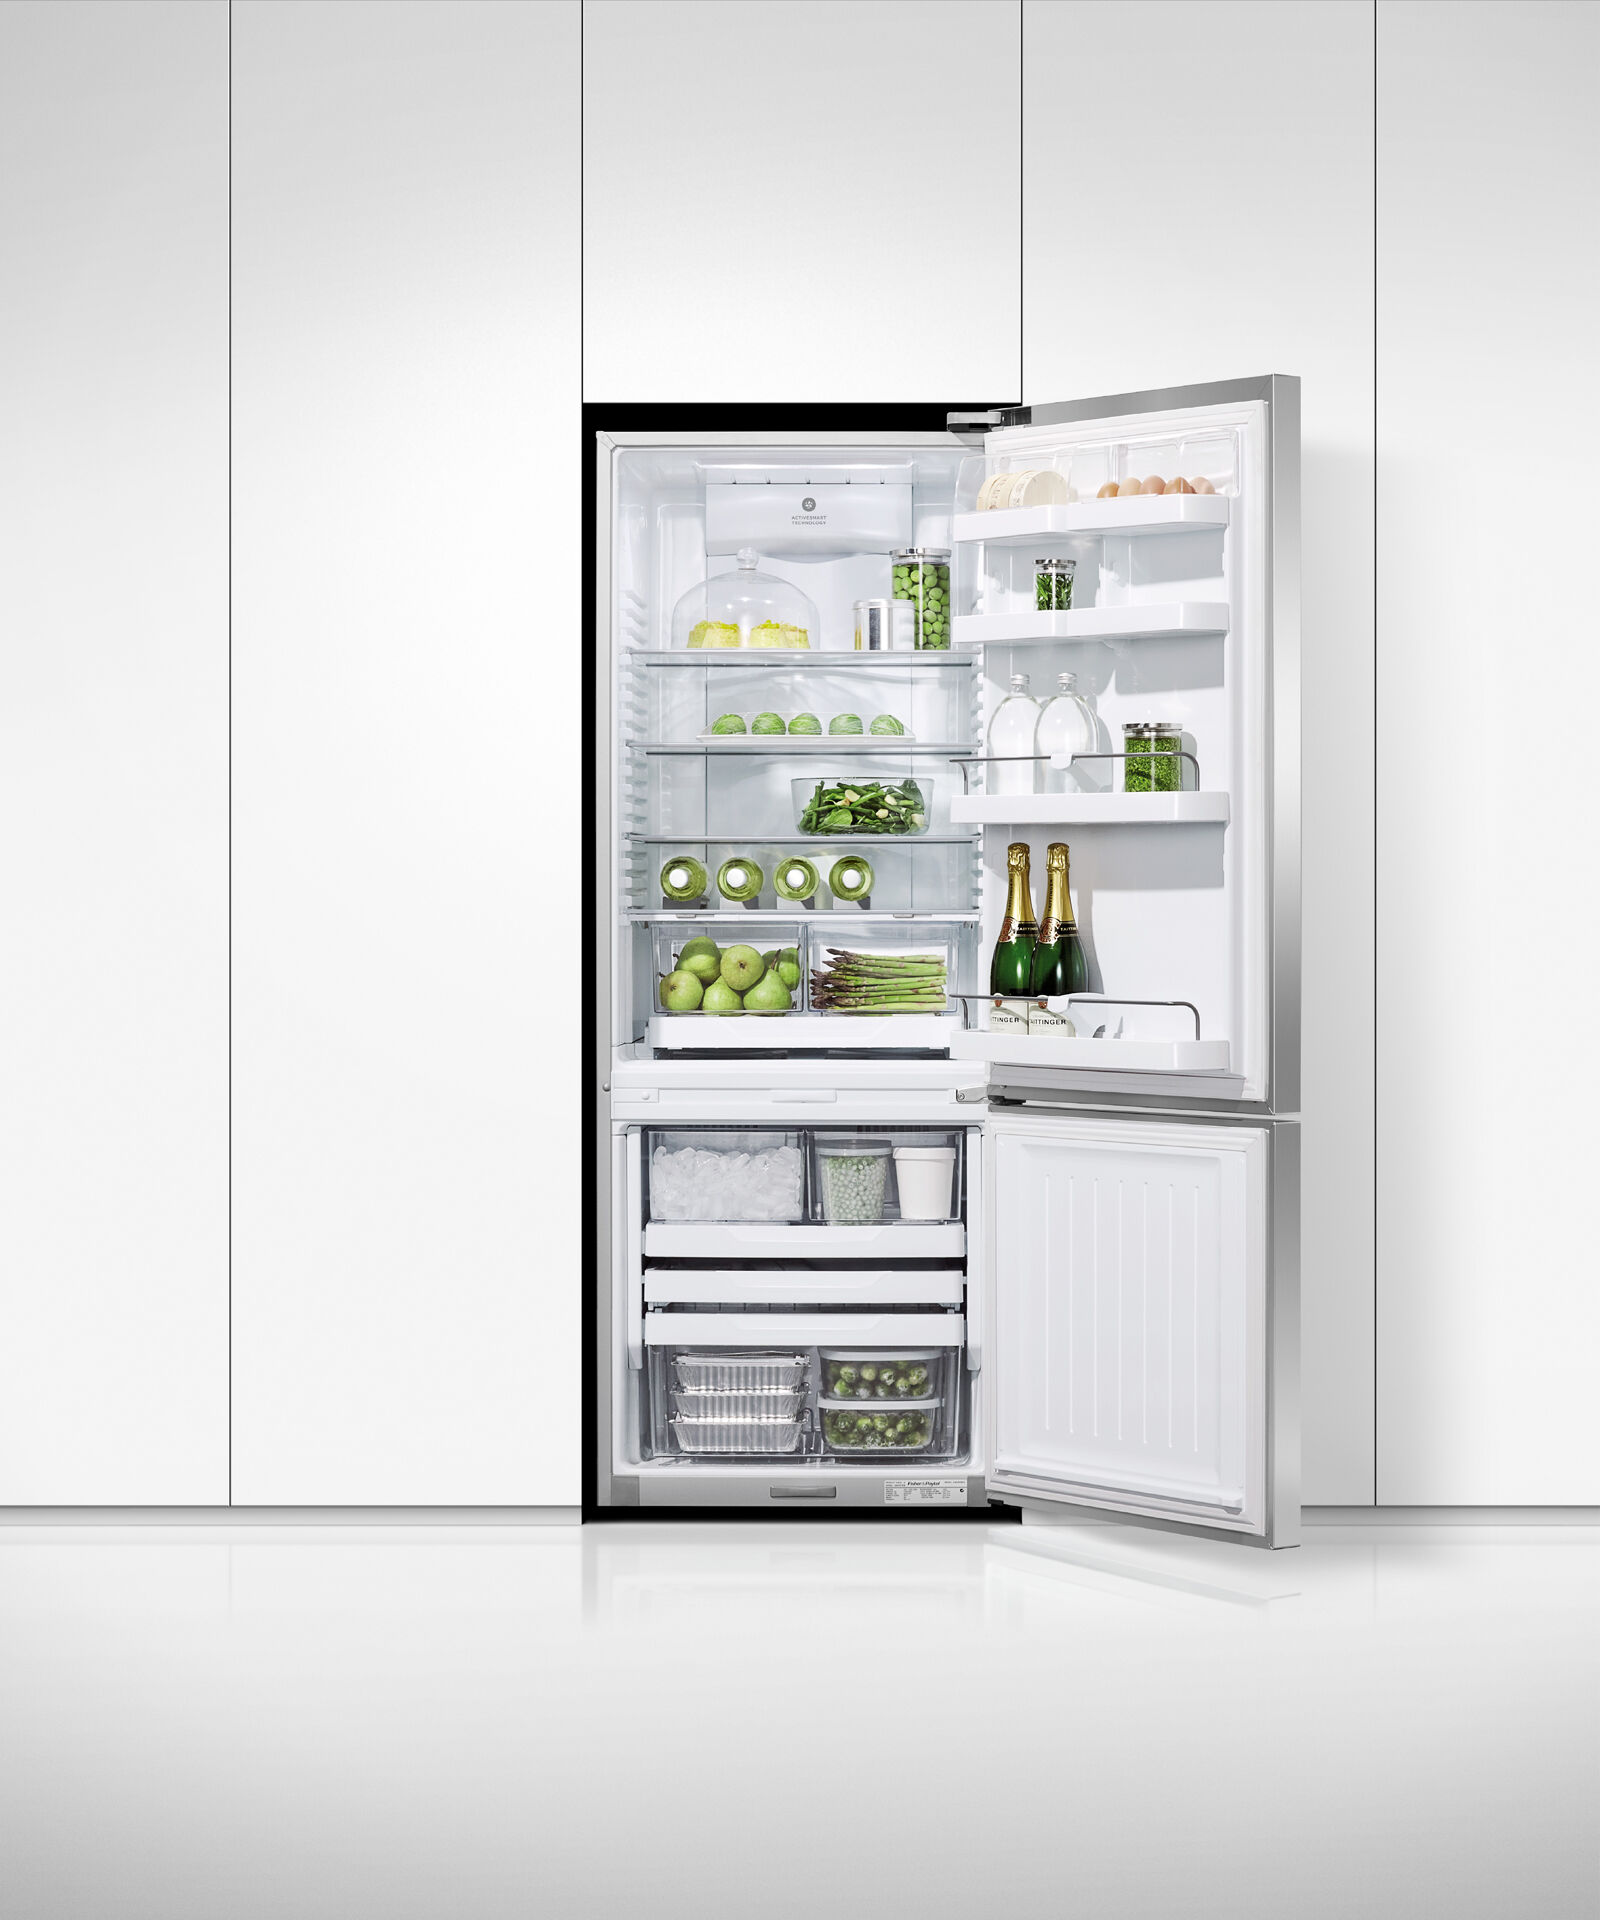 獨立式雪櫃冷凍櫃, 63.5cm, 自動製冰和冰水, gallery image 4.0